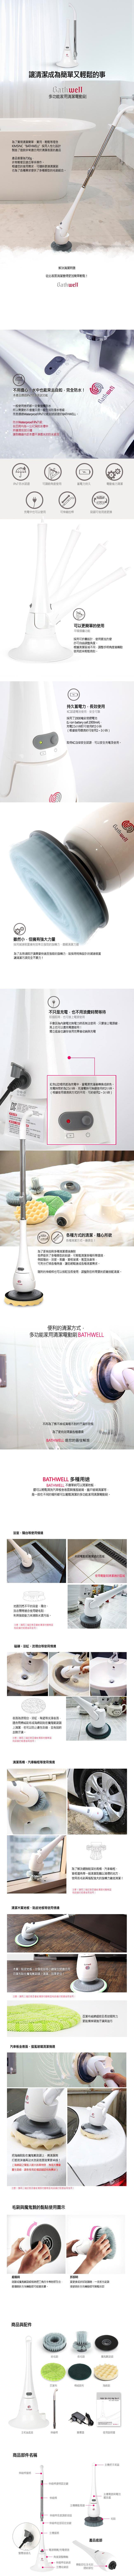 韩国Bathwell无线多功能家用清洁电动刷(浴室/客厅/汽车)